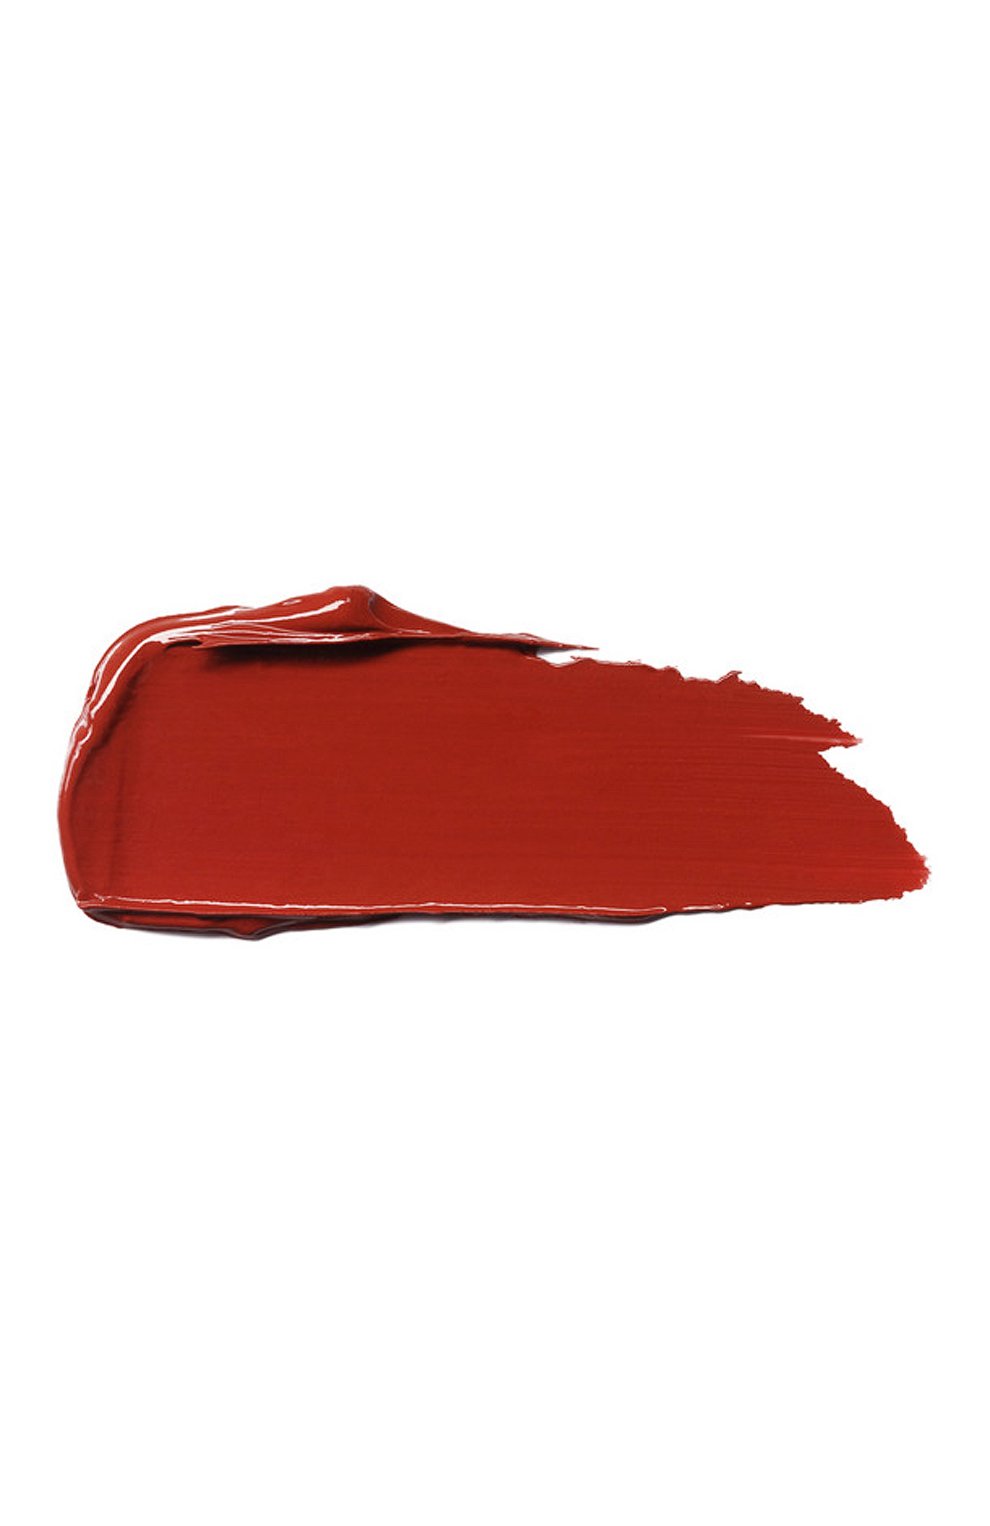 Помада с кремовым финишем, оттенок smoked rouge (3.5g) KILIAN  цвета, арт. 3700550226482 | Фото 2 (Финишное покрытие: Сатиновый)